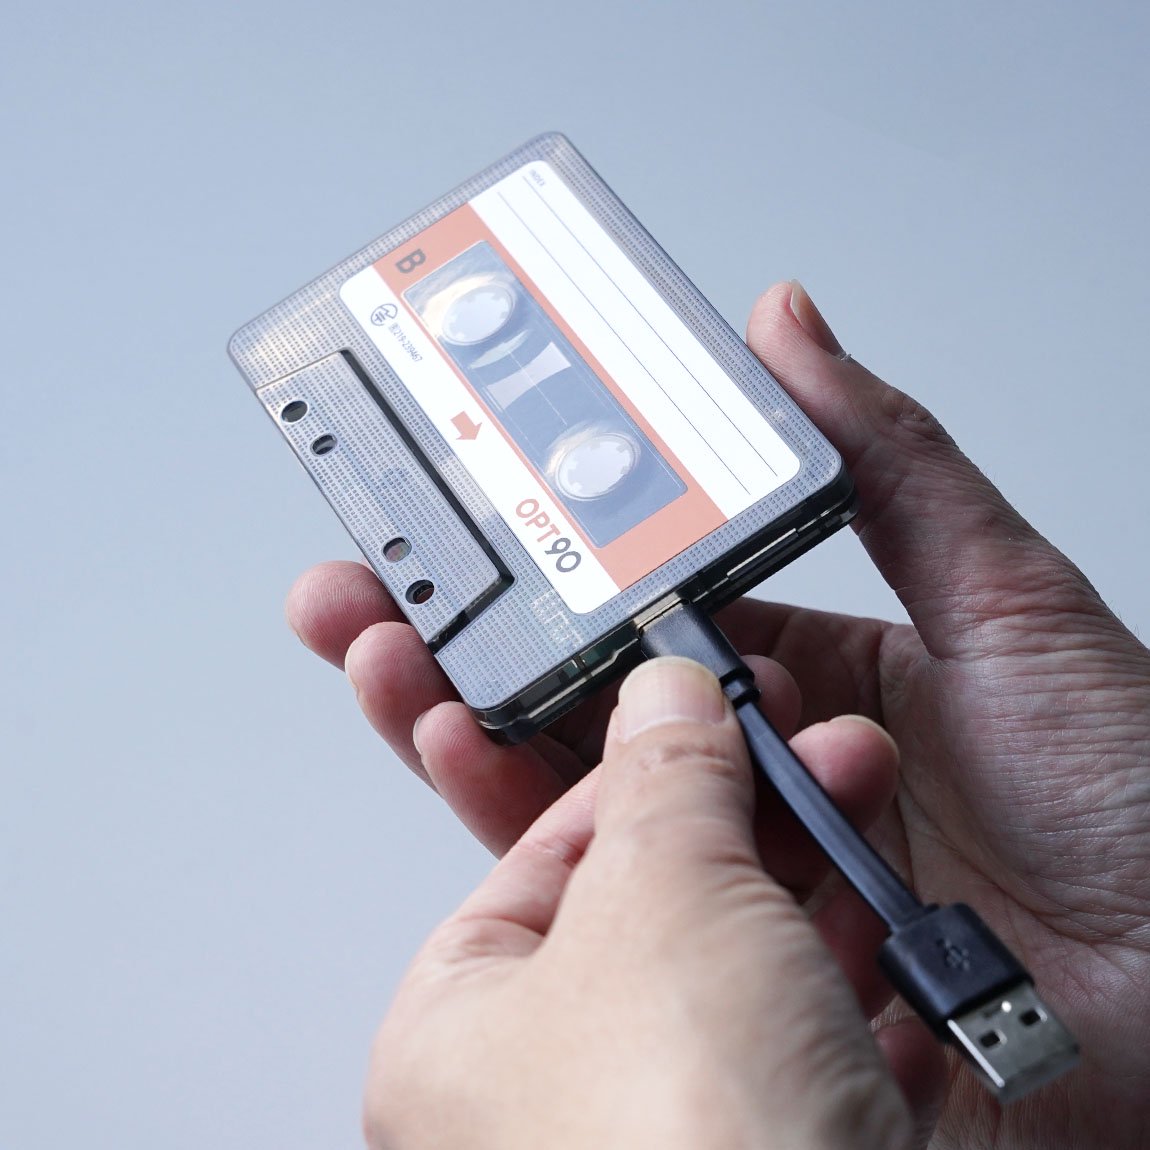  シンシア　Opt  オプト カセットテープ型 Bluetoothスピーカー カセットテープ　音楽　音楽好き SDカード対応